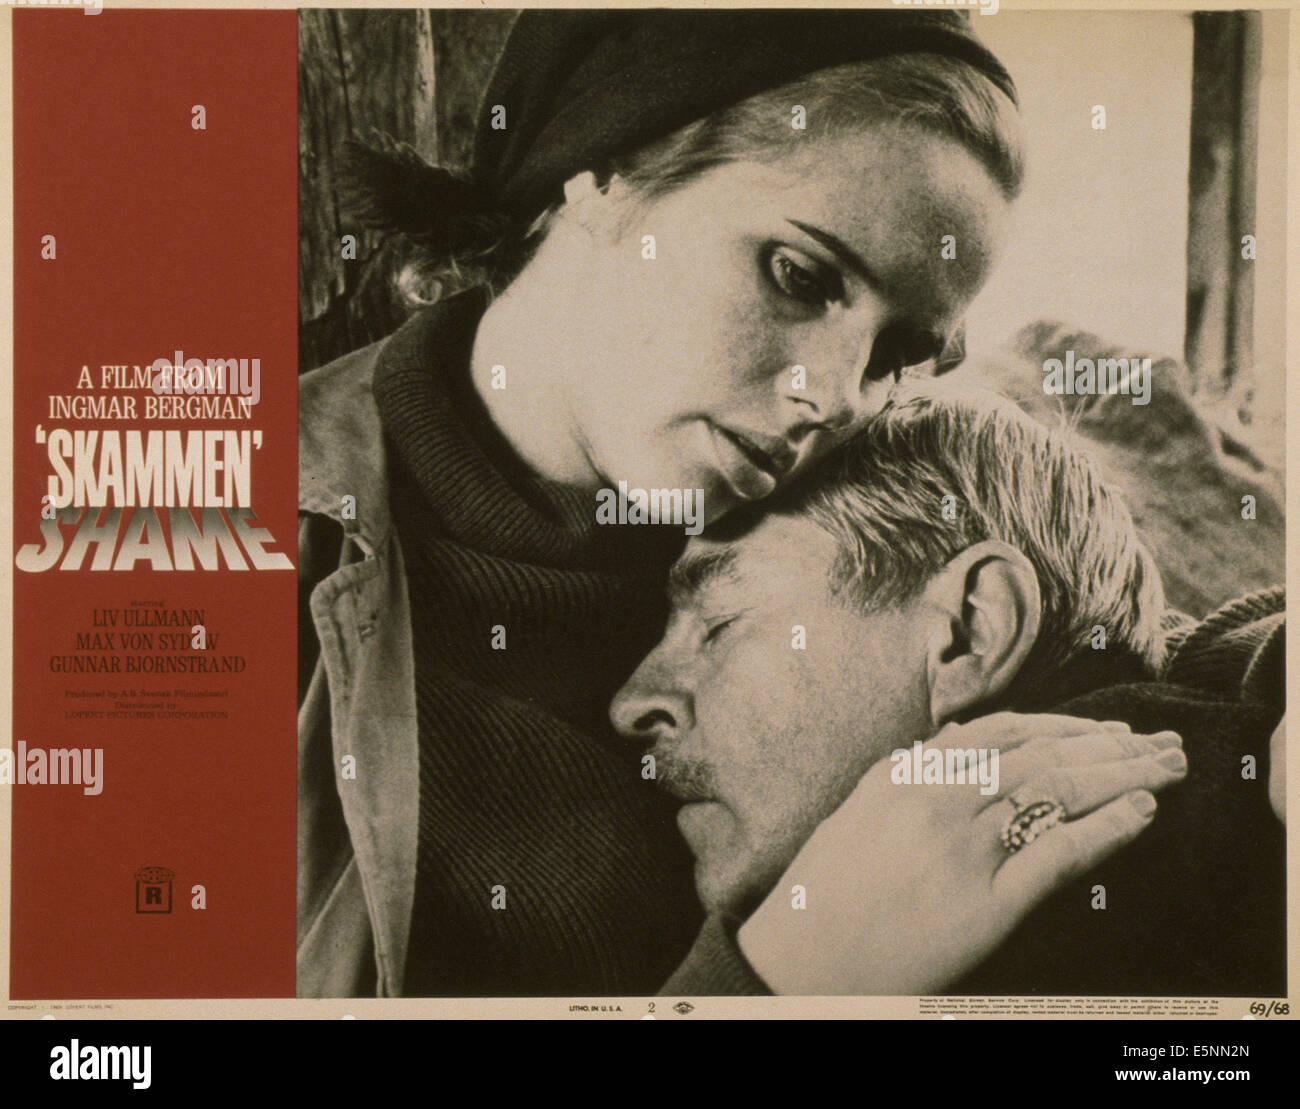 La honte, (aka SKAMMEN), US lobbycard, de gauche : Liv Ullmann, Gunnar Bjornstrand, 1968 Banque D'Images